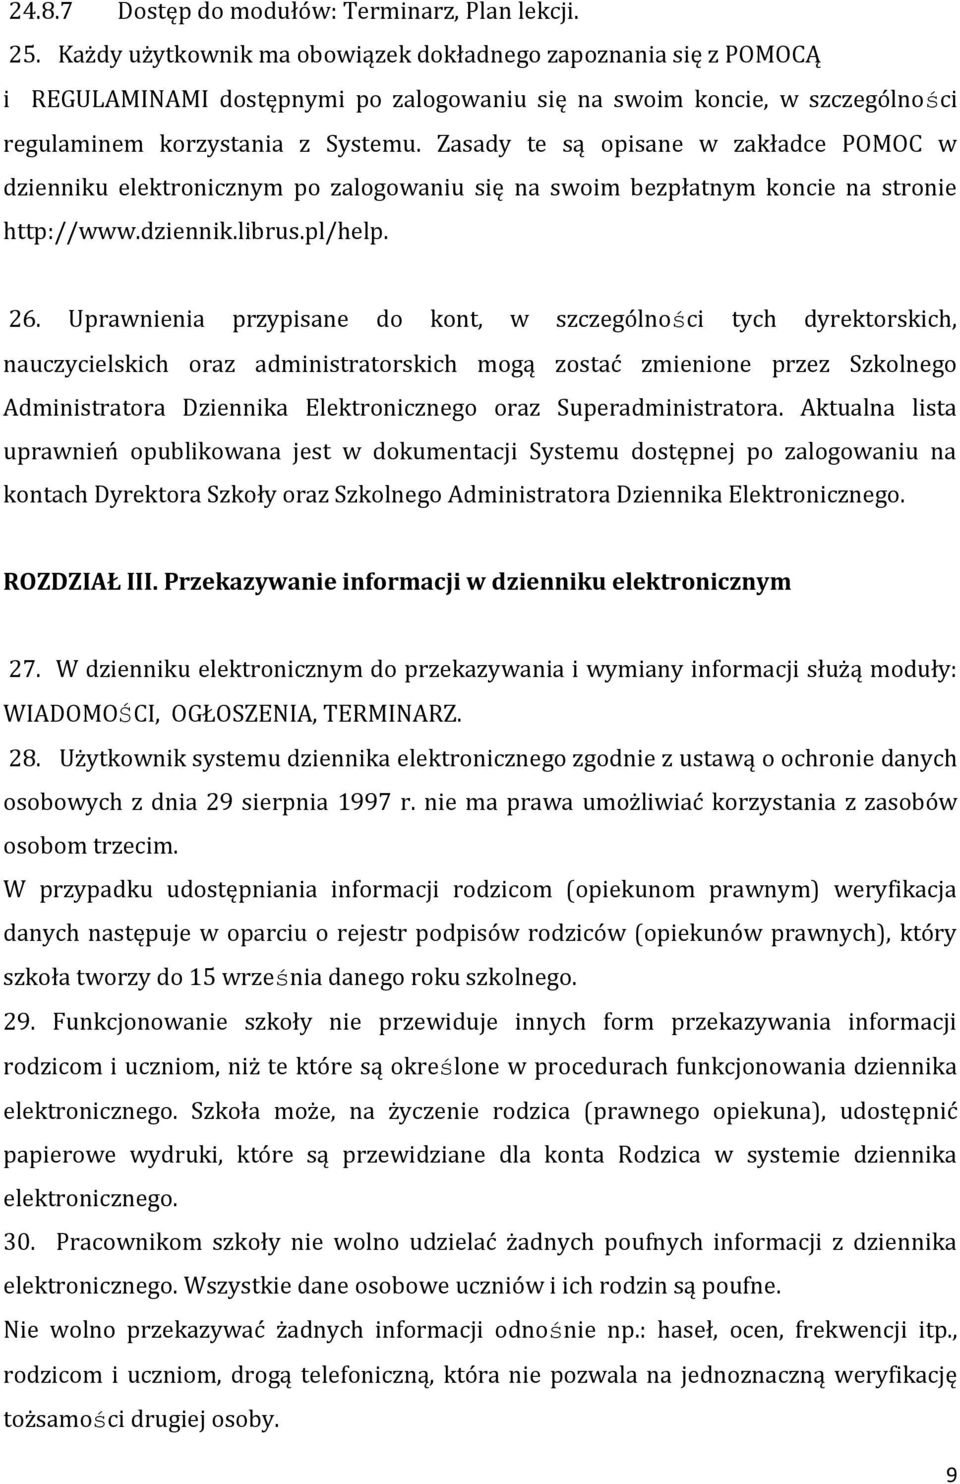 Zasady te są opisane w zakładce POMOC w dzienniku elektronicznym po zalogowaniu się na swoim bezpłatnym koncie na stronie http://www.dziennik.librus.pl/help. 26.